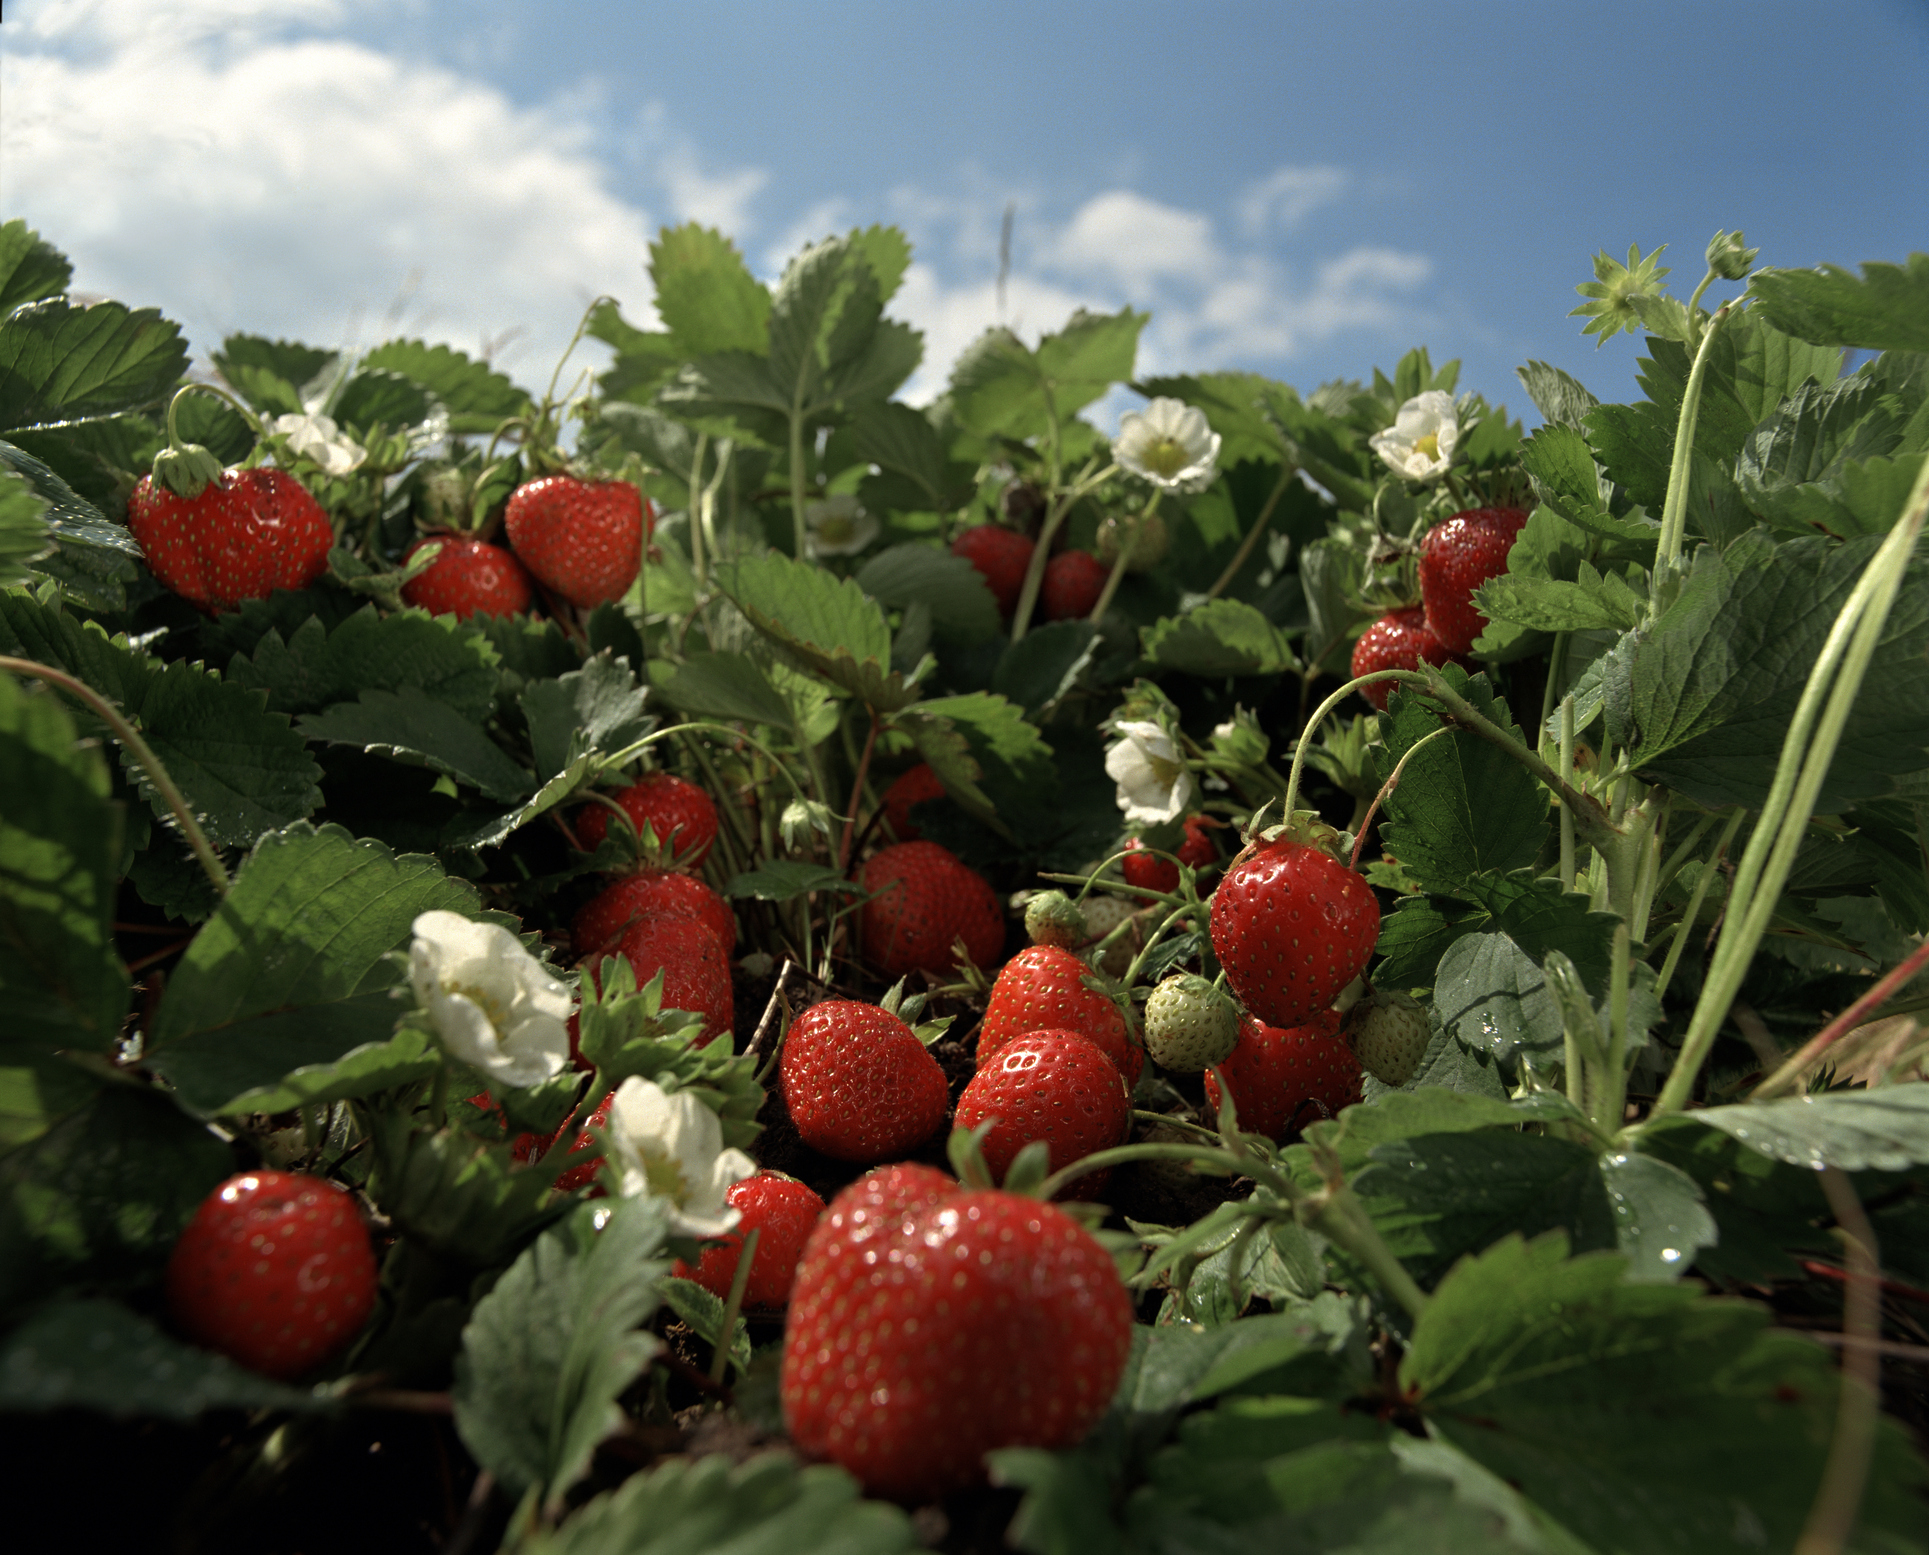 Клубника в августе: что делать? Какой уход нужен за ягодами после сбора урожая?